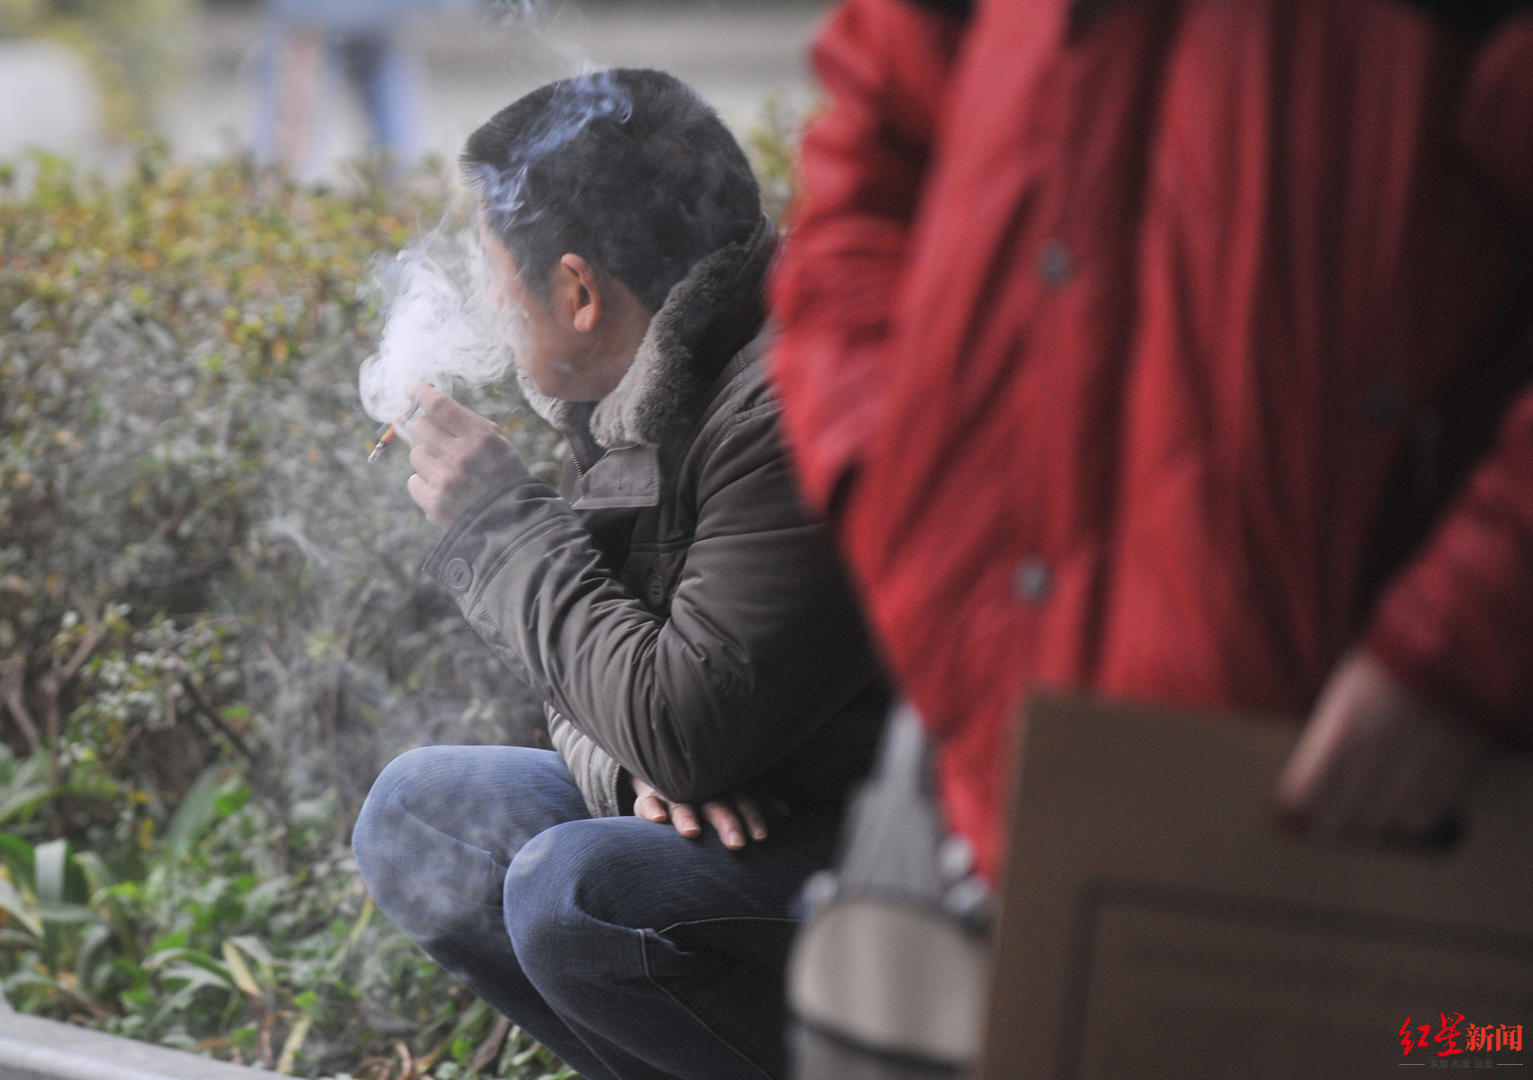 全国有3.16亿烟民，北京控烟协会呼吁将戒烟药物纳入医保